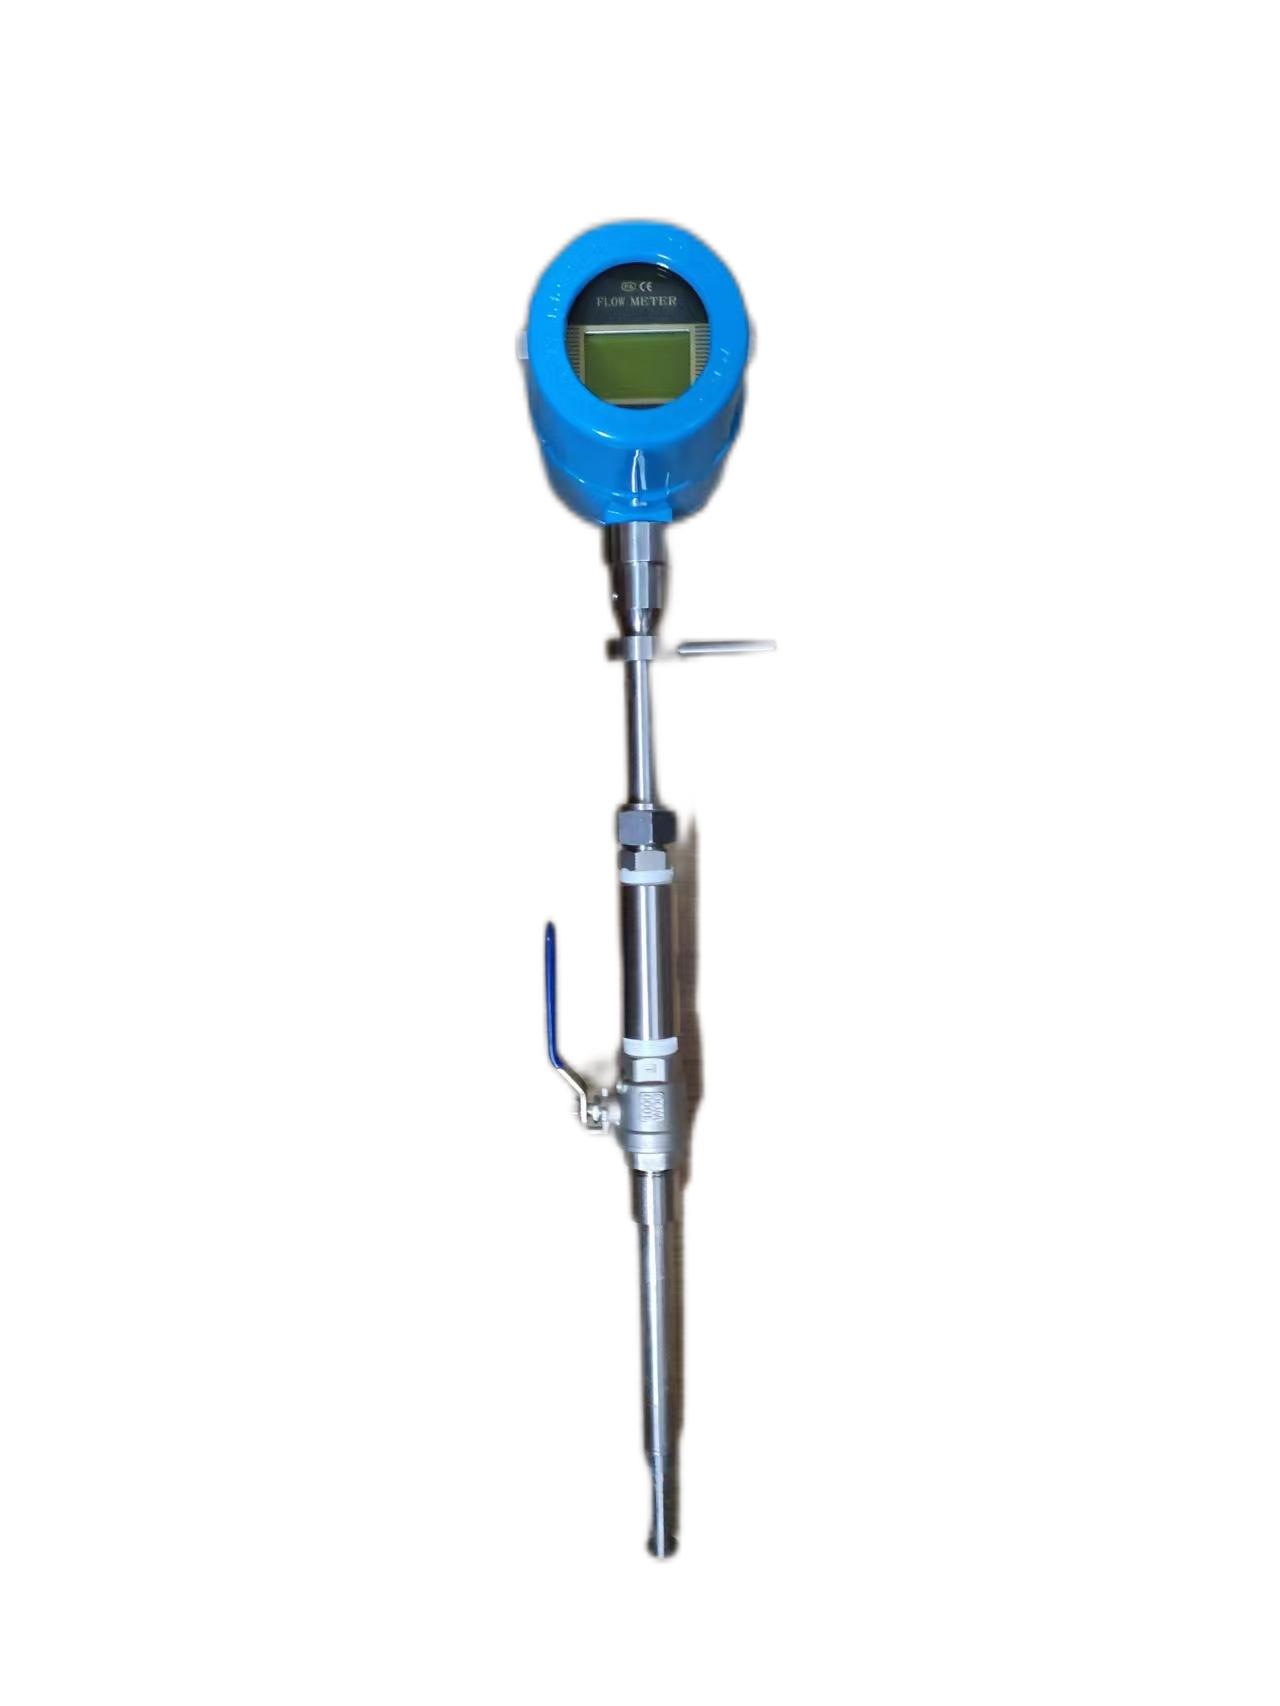 热工测量仪表：实时监测、准确测量的能源管理利器